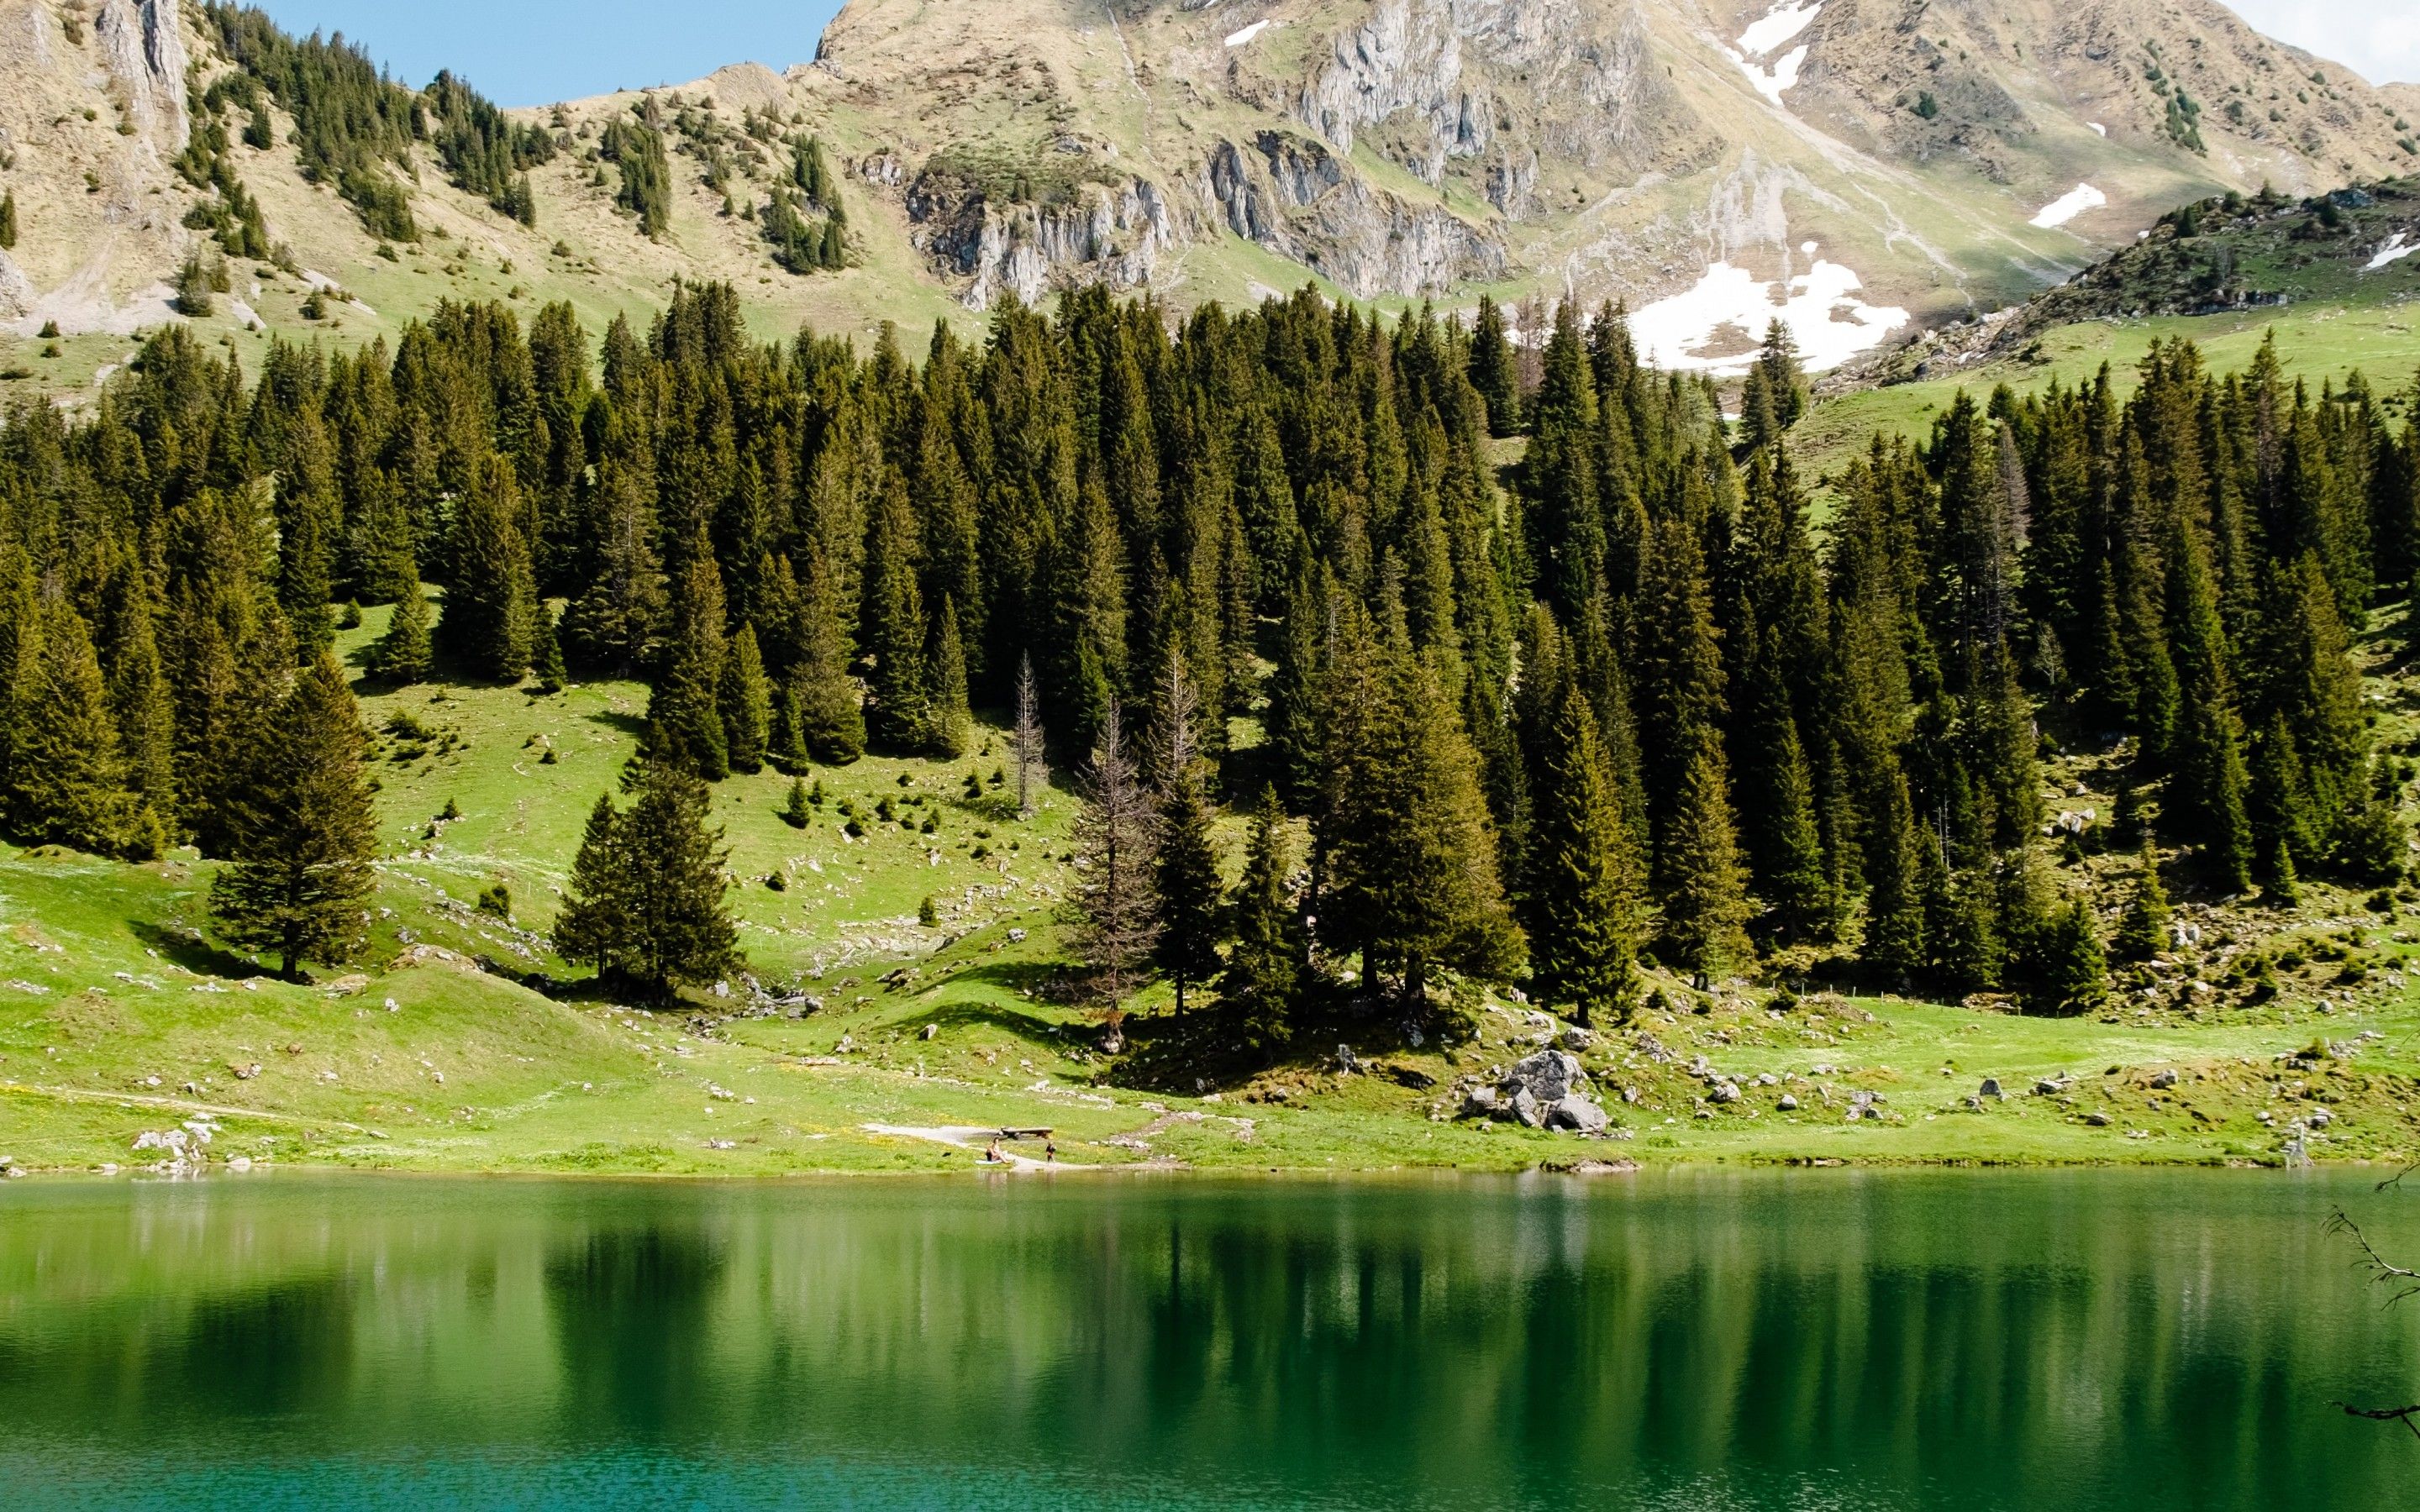 Gantrischseeli lake 4K Wallpaper, Pine trees, Spring, Reflection, Mountain, Peak, Switzerland, Nature